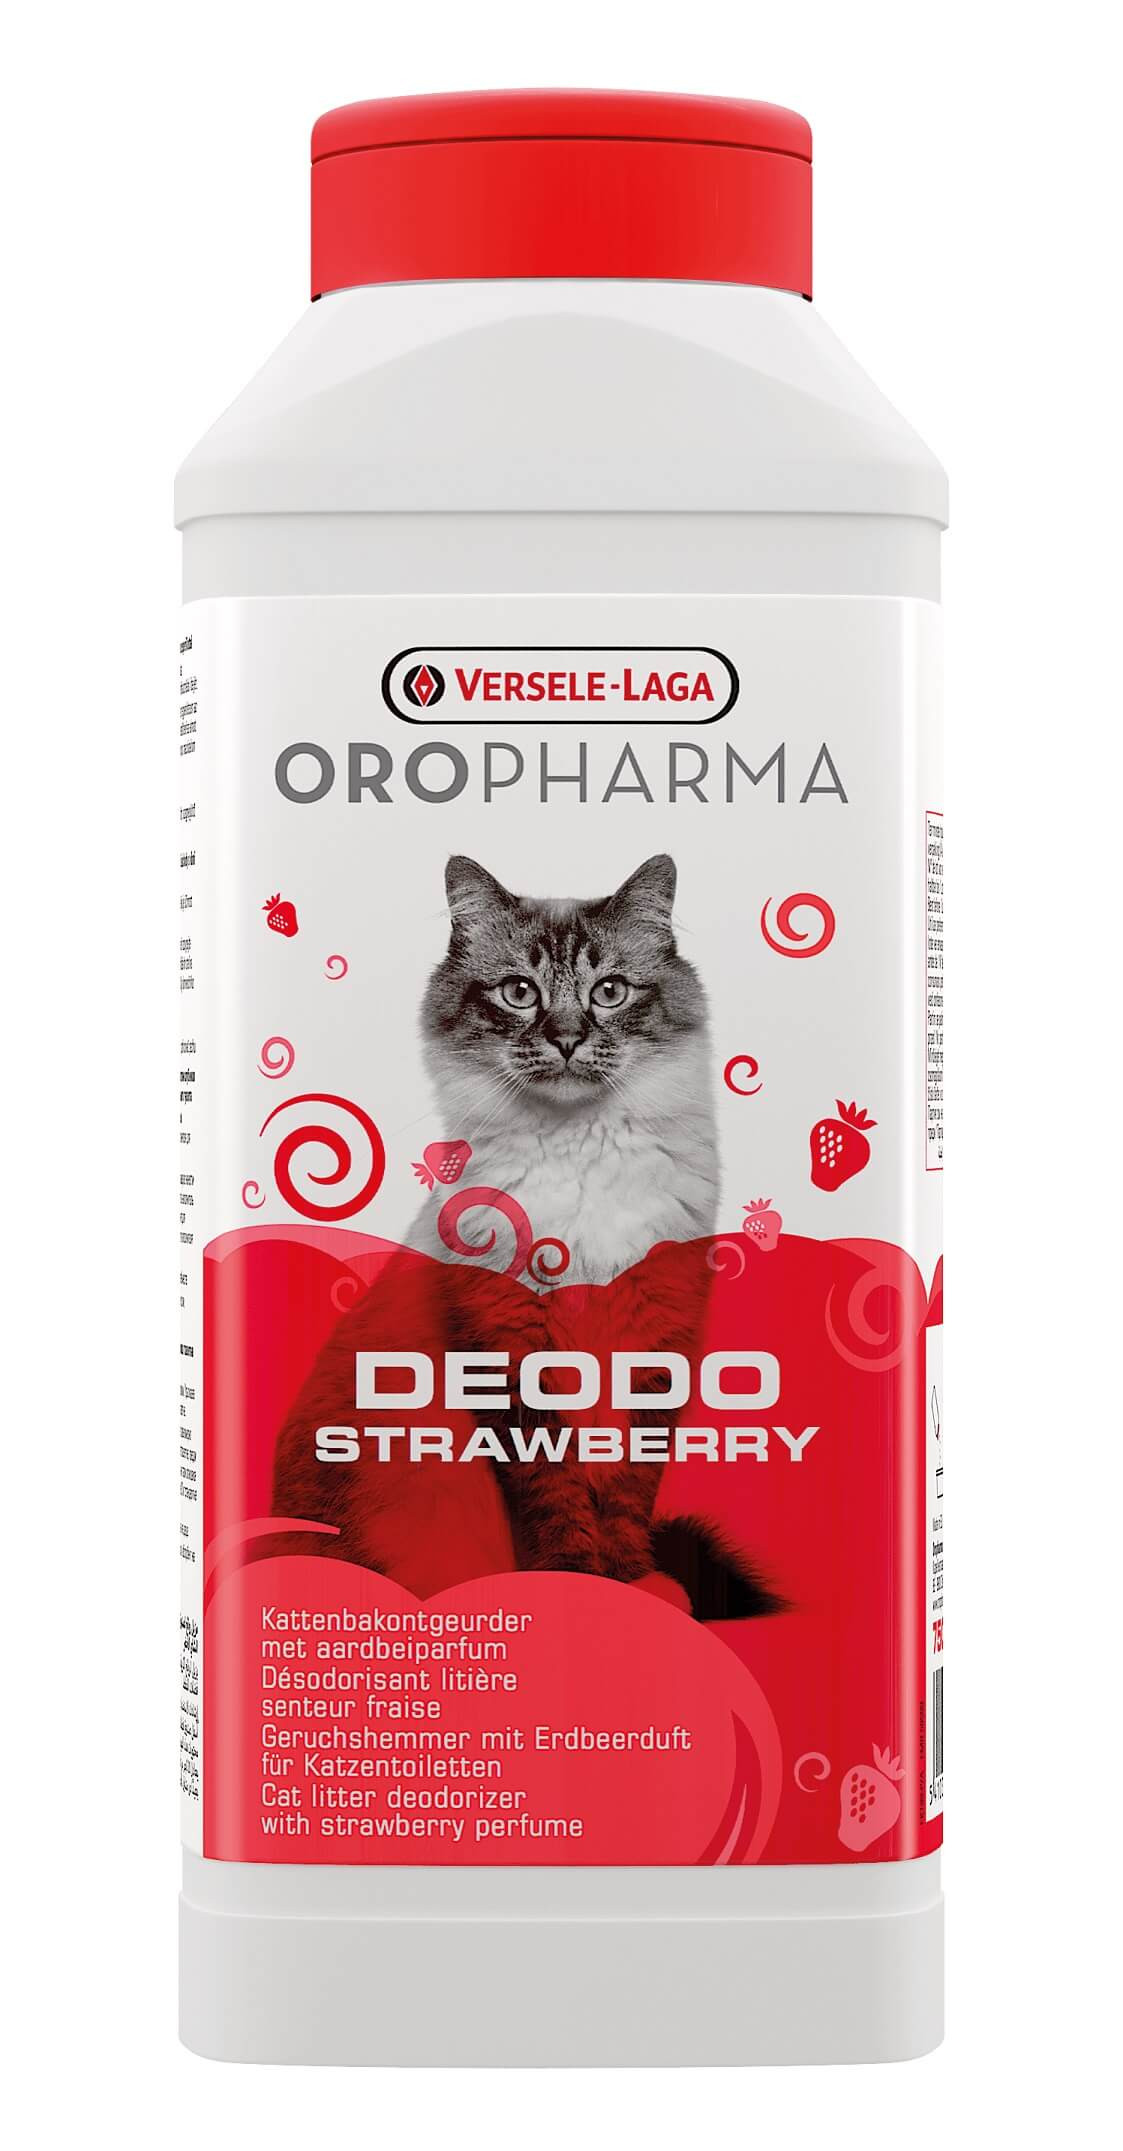 Versele-Laga Oropharma Deodo kattebakke lugtforfrisker